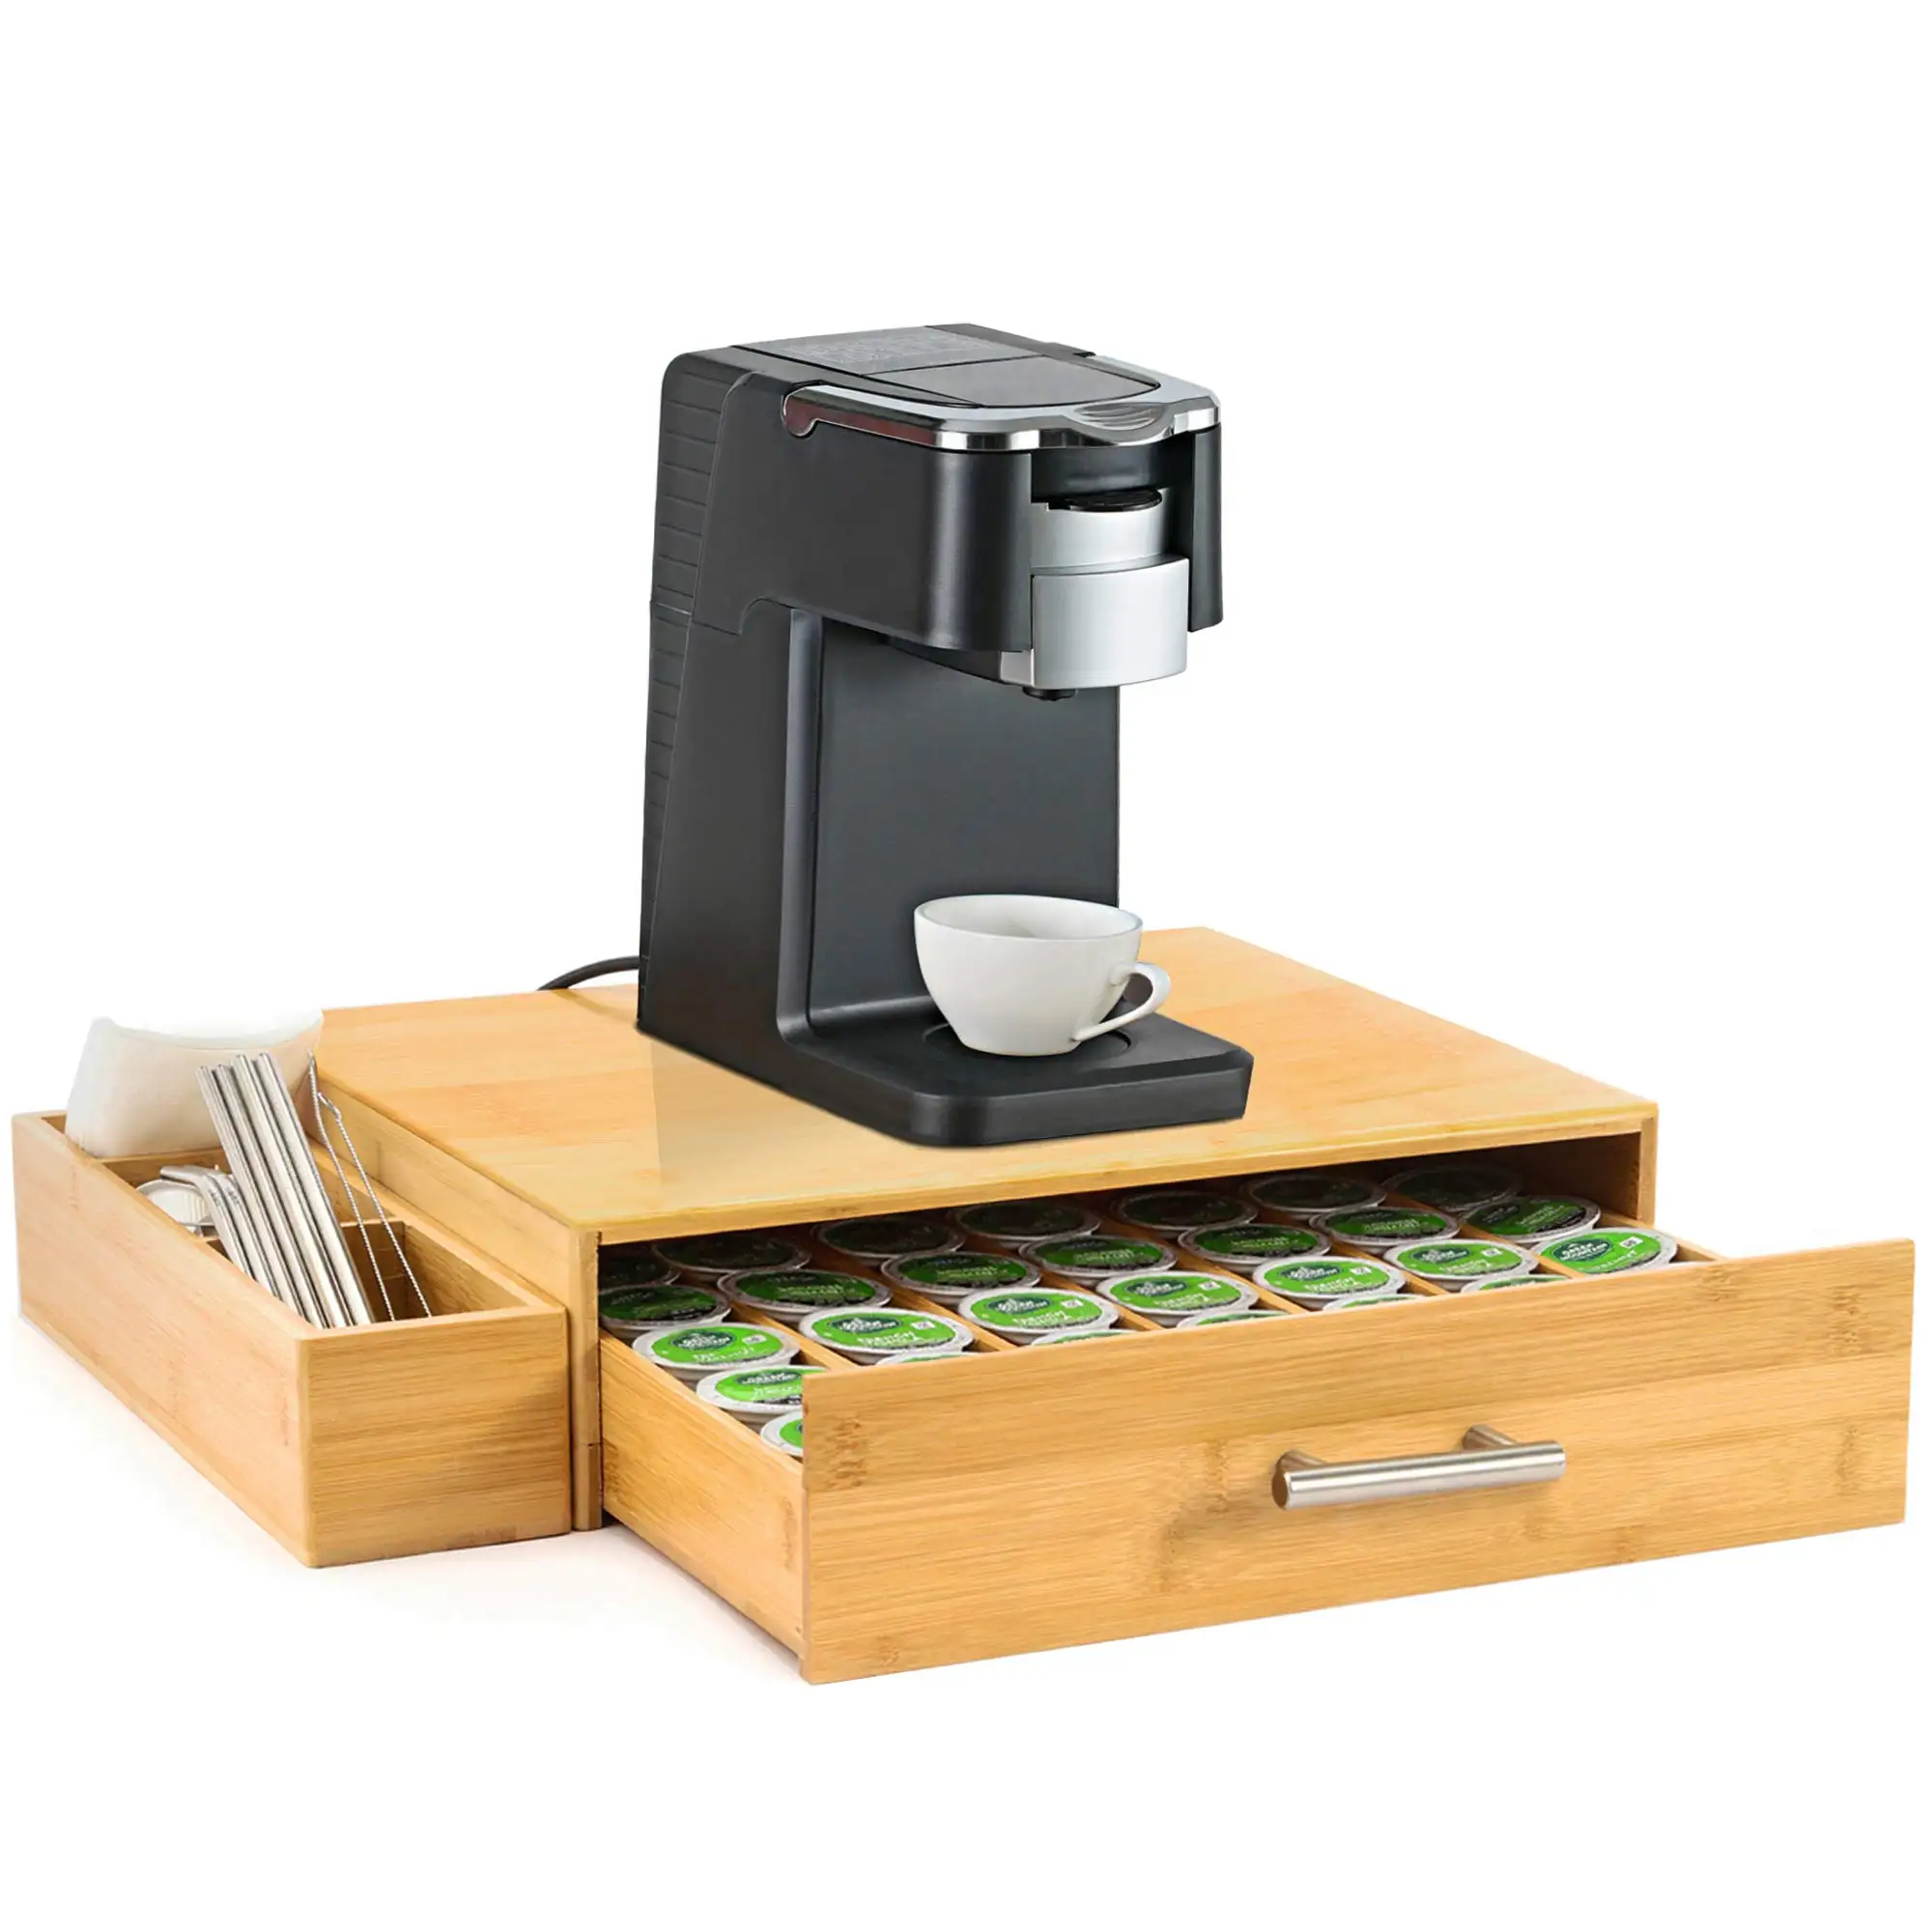 Bambus Kaffee pad halter Kaffee kapsel Aufbewahrung organisator mit Schublade und seitlicher Aufbewahrung sbox für K Cup Pods Kaffee halter